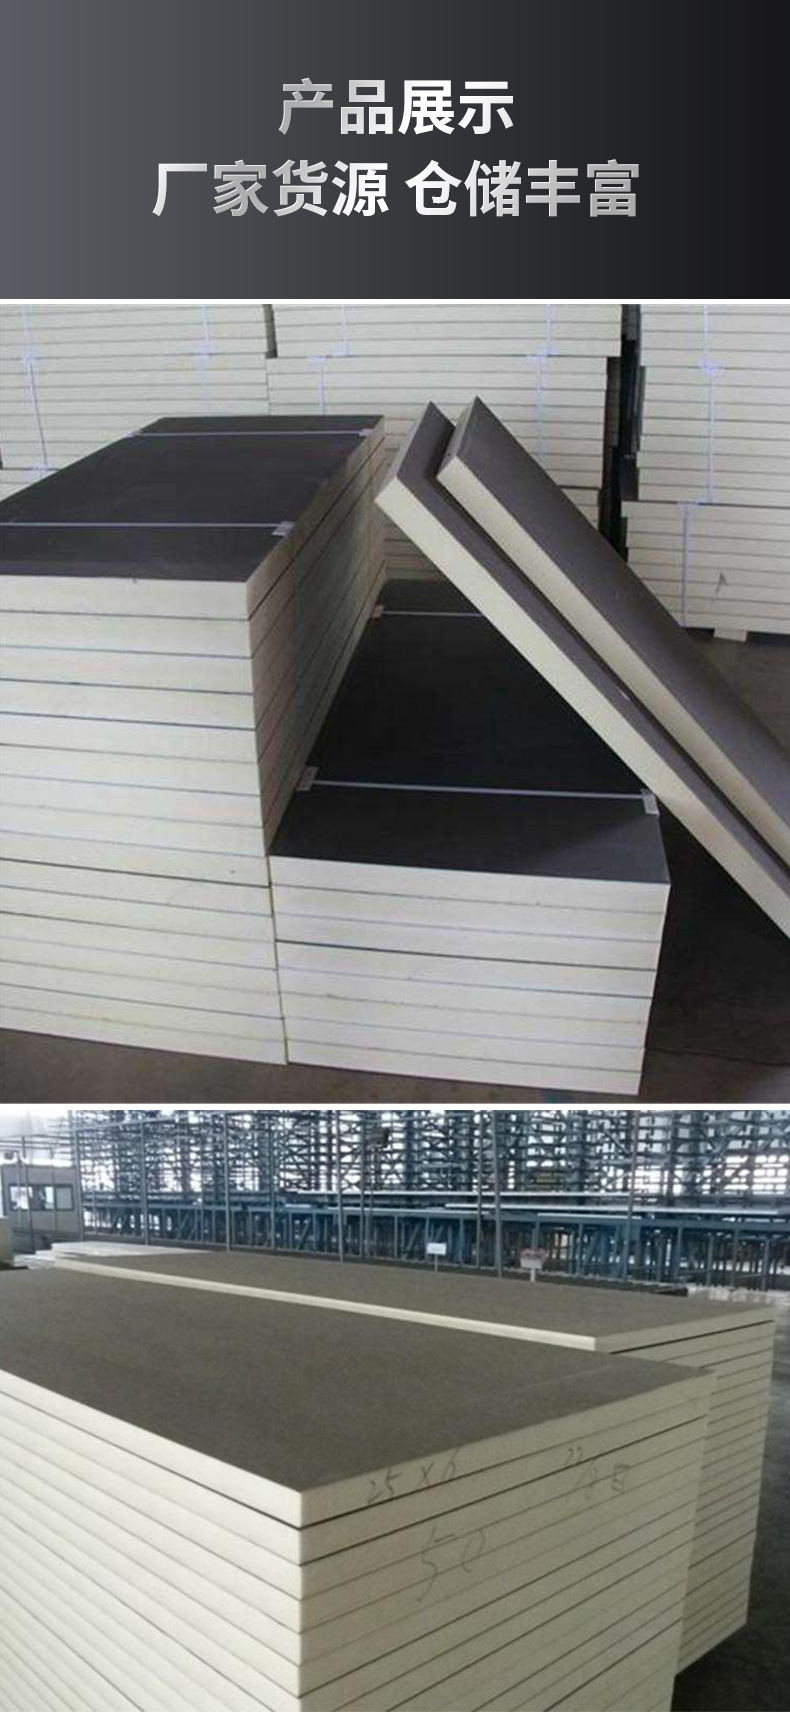 Polyurethane rigid foam plastic board gypsum board+polyurethane foam board ab board insulation board